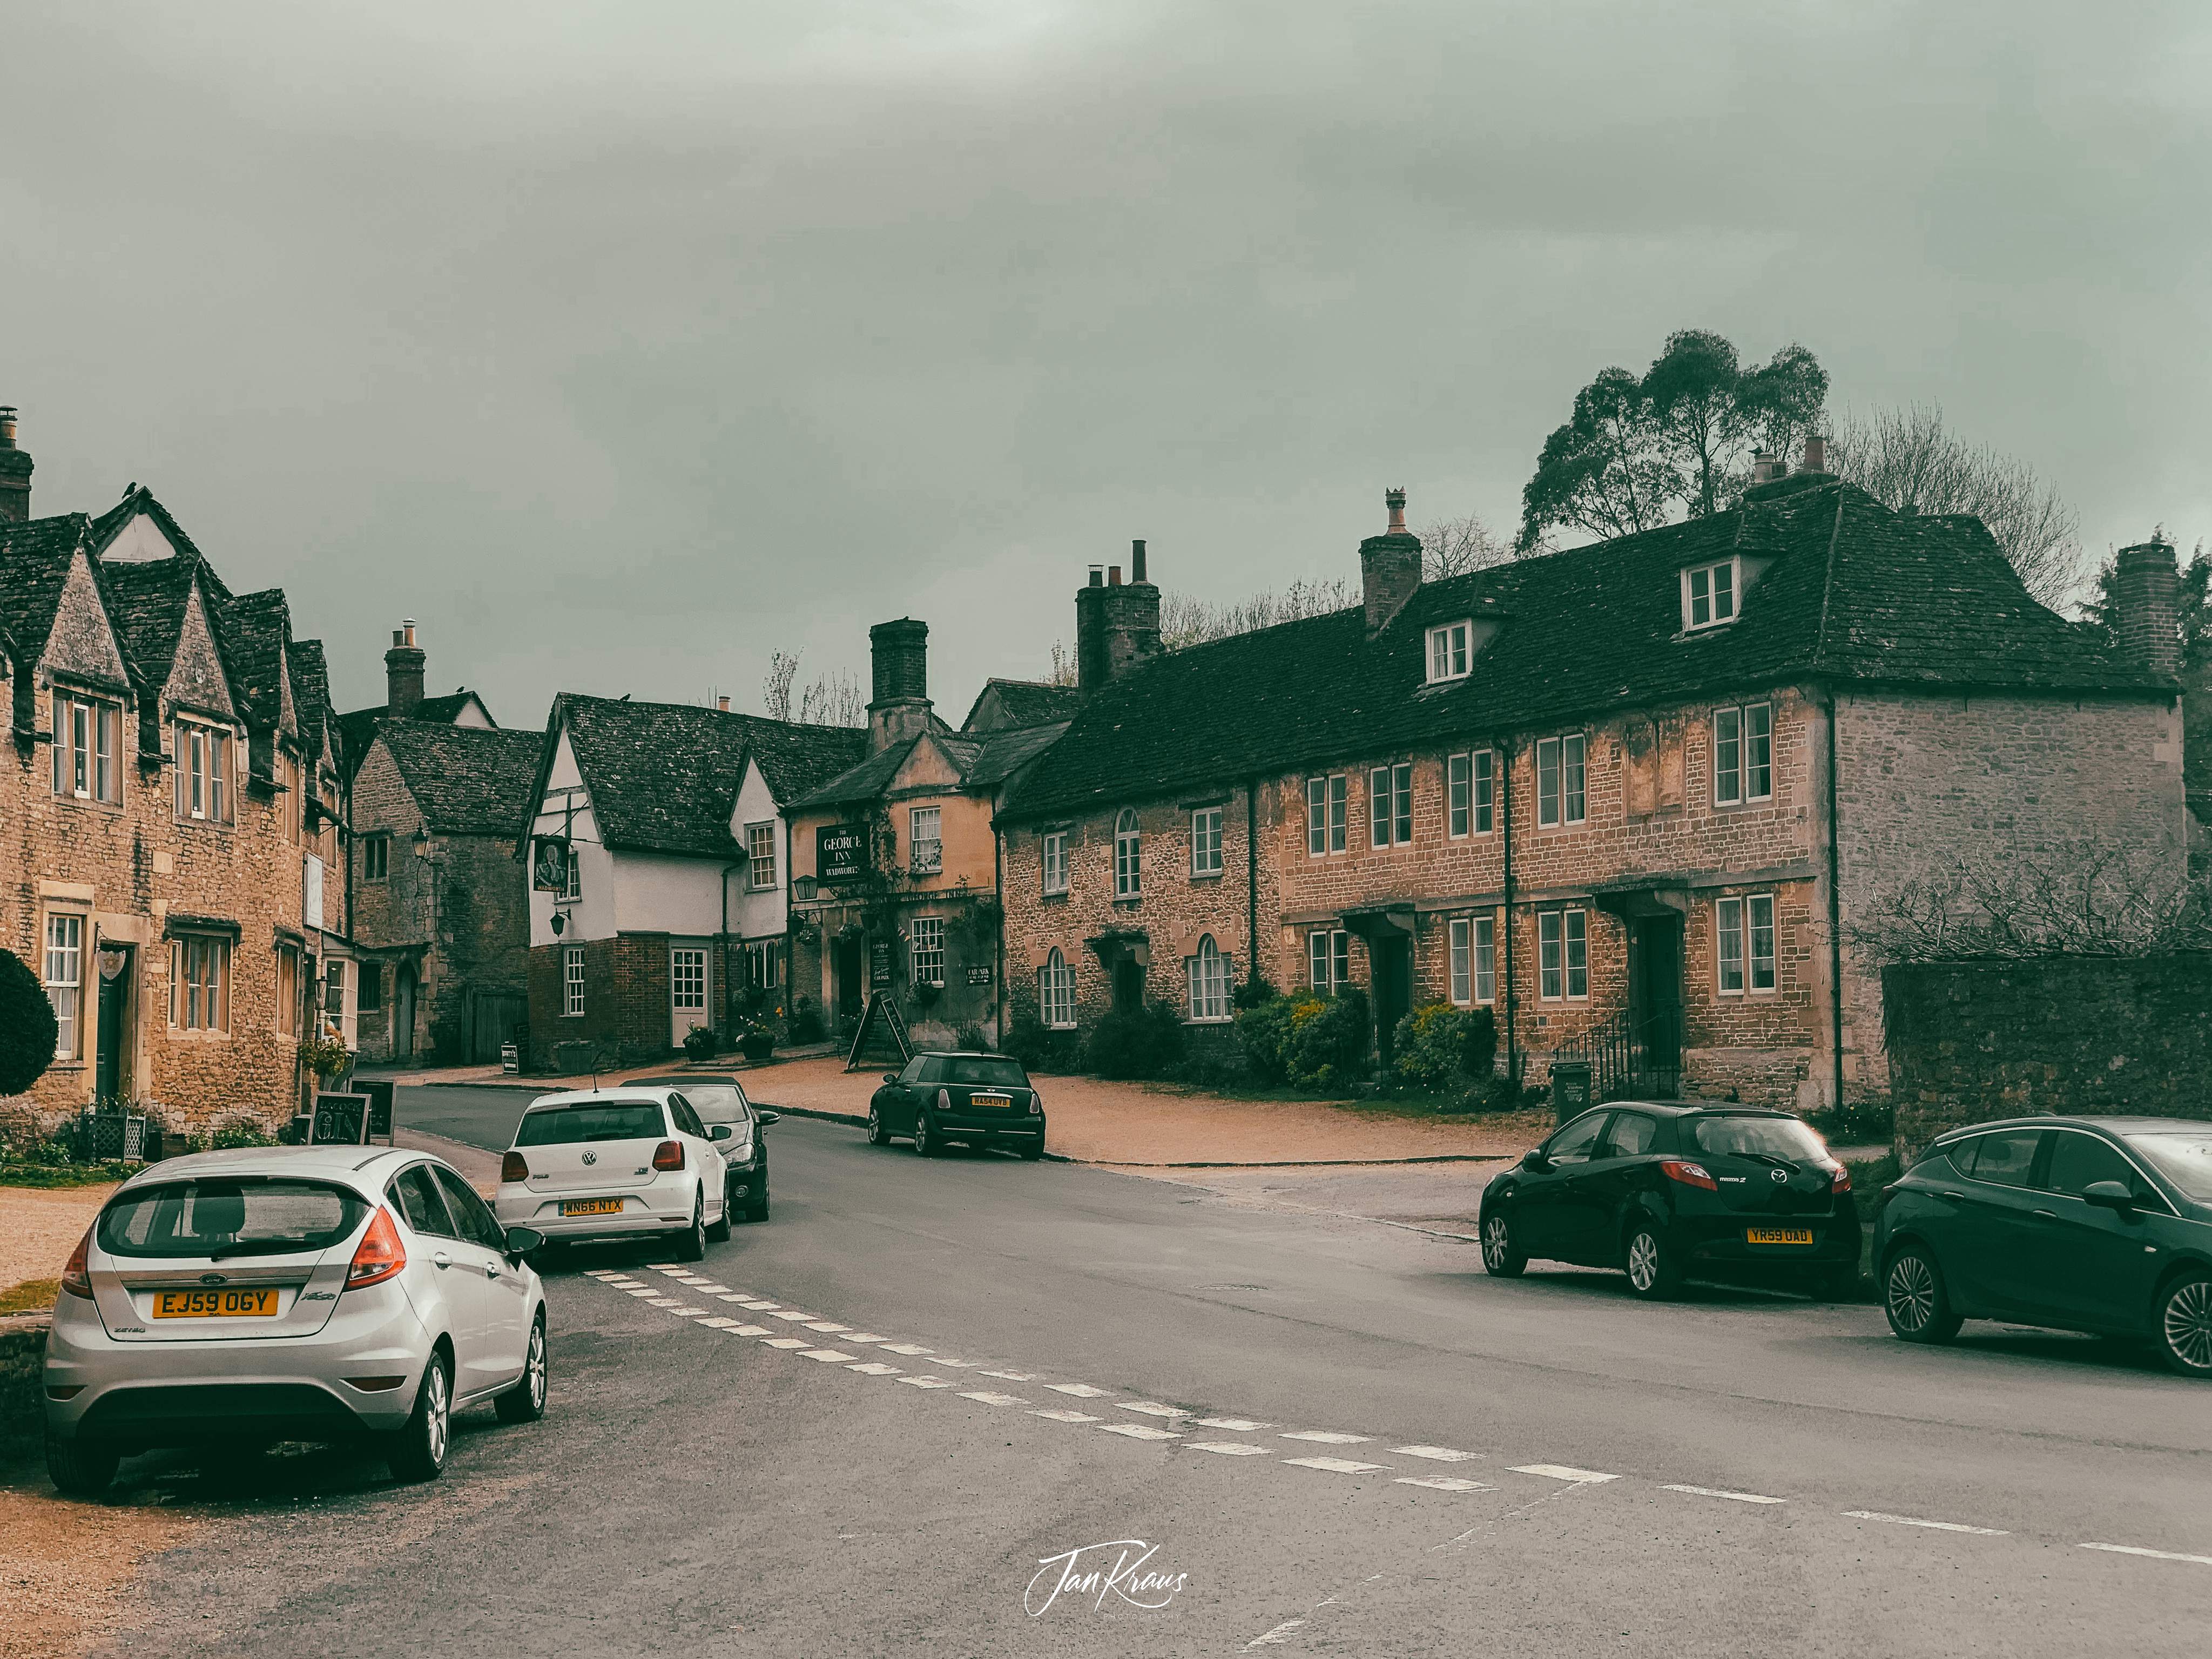 Village of Lacock, Wiltshire, England, UK